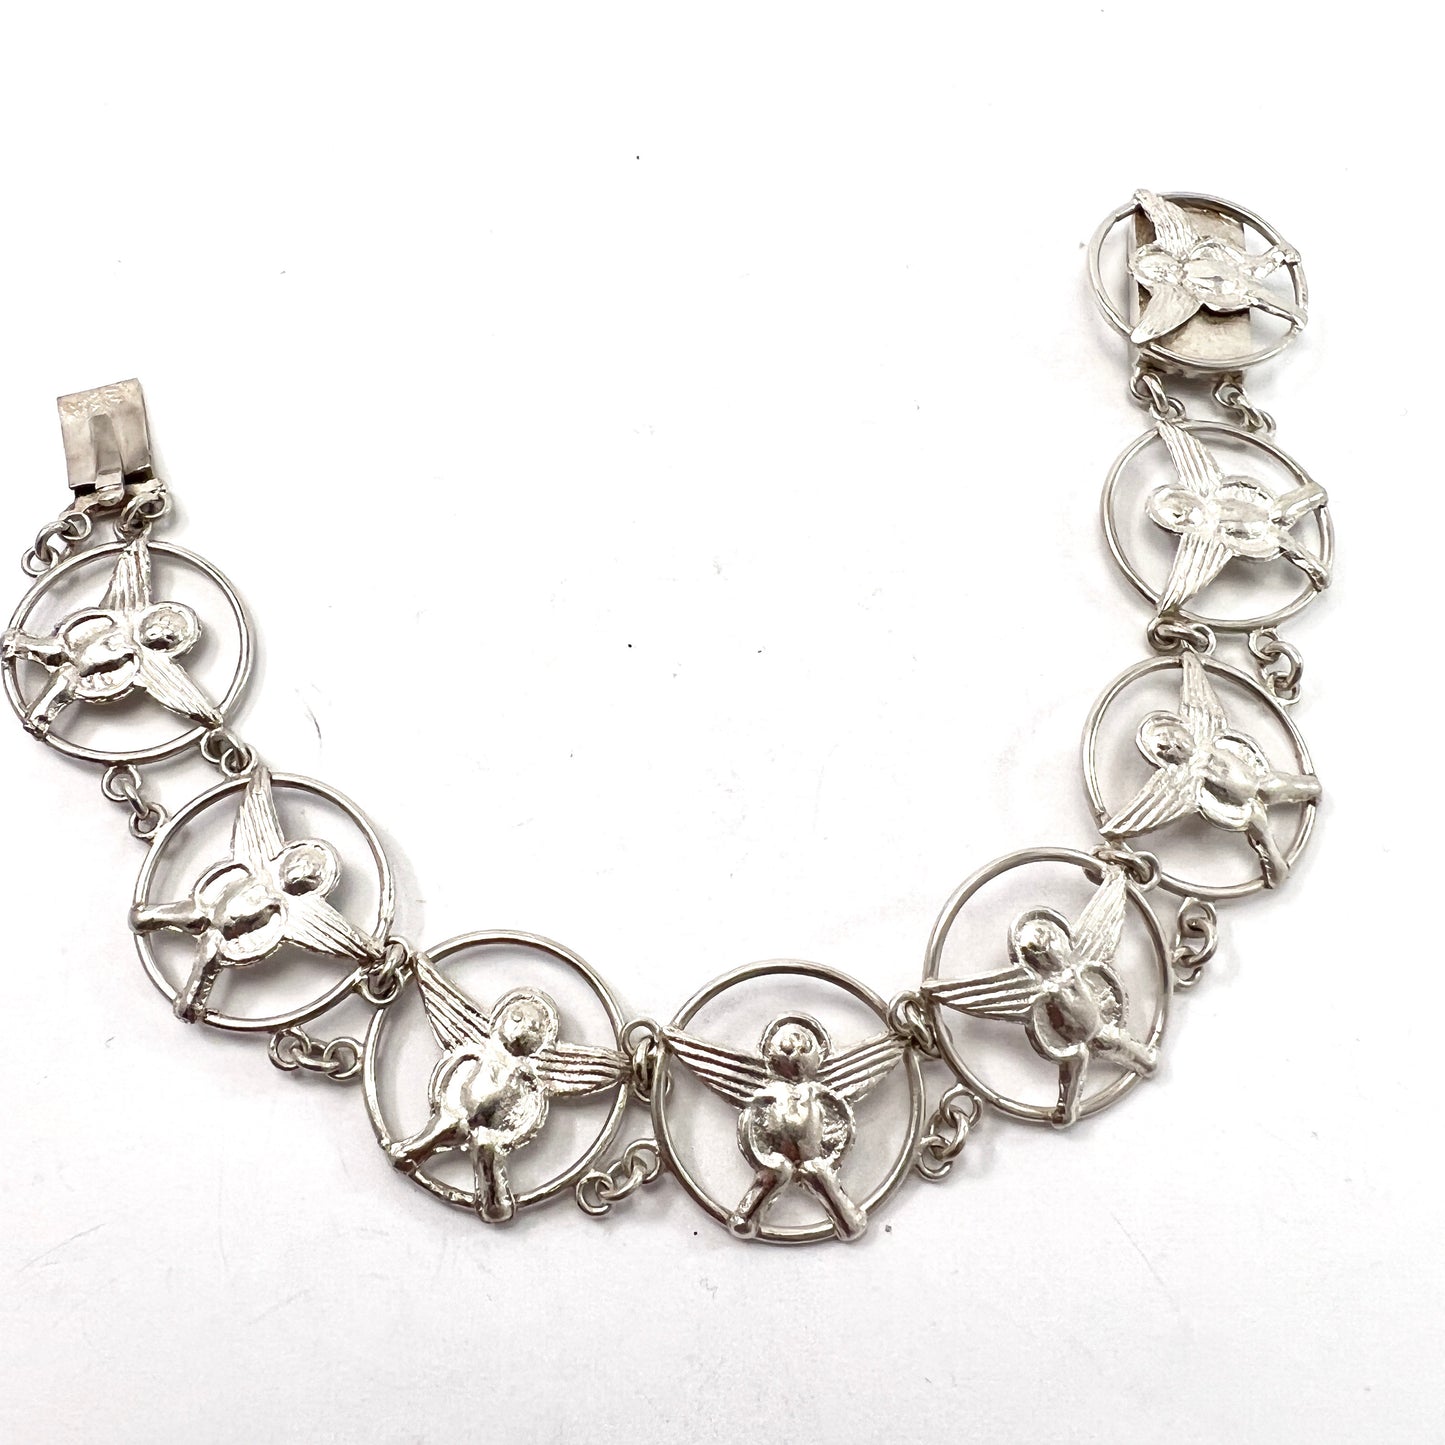 Sweden year 1907. Antique Solid Silver Angels Bracelet.